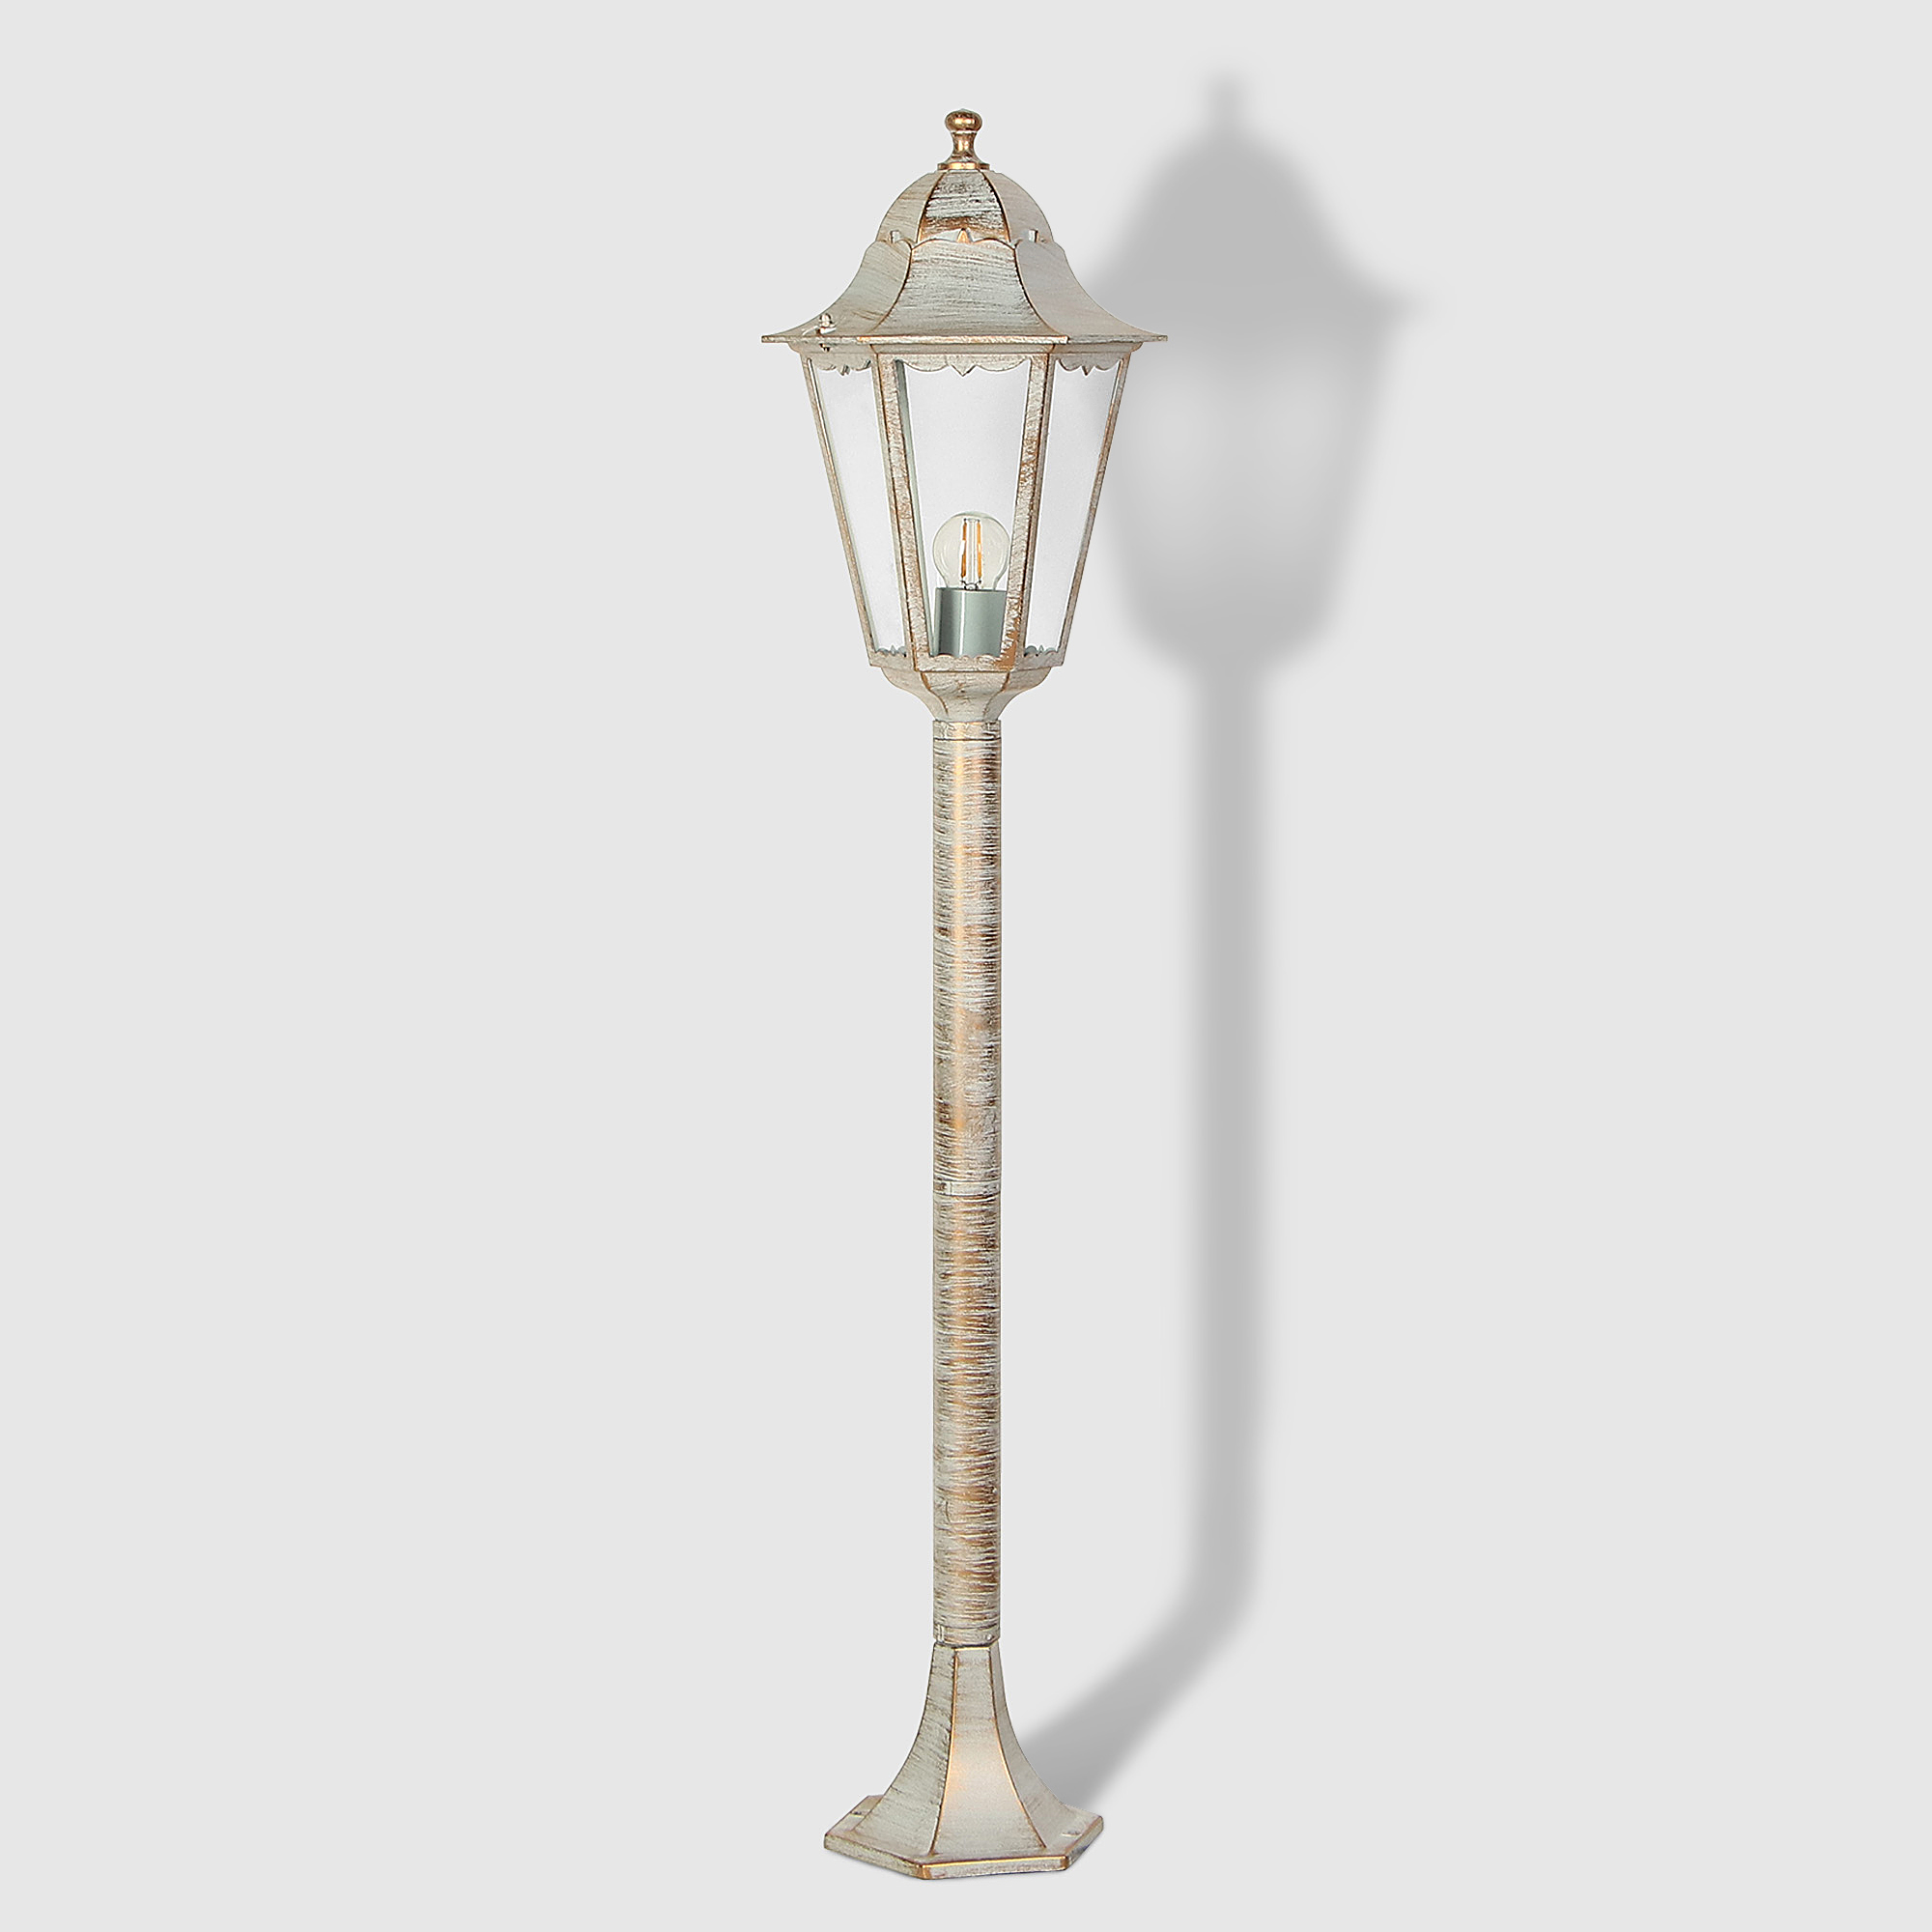 Светильник садовый Amber Lamp 8007LA напольный IP44 E27 100Вт, белое золото